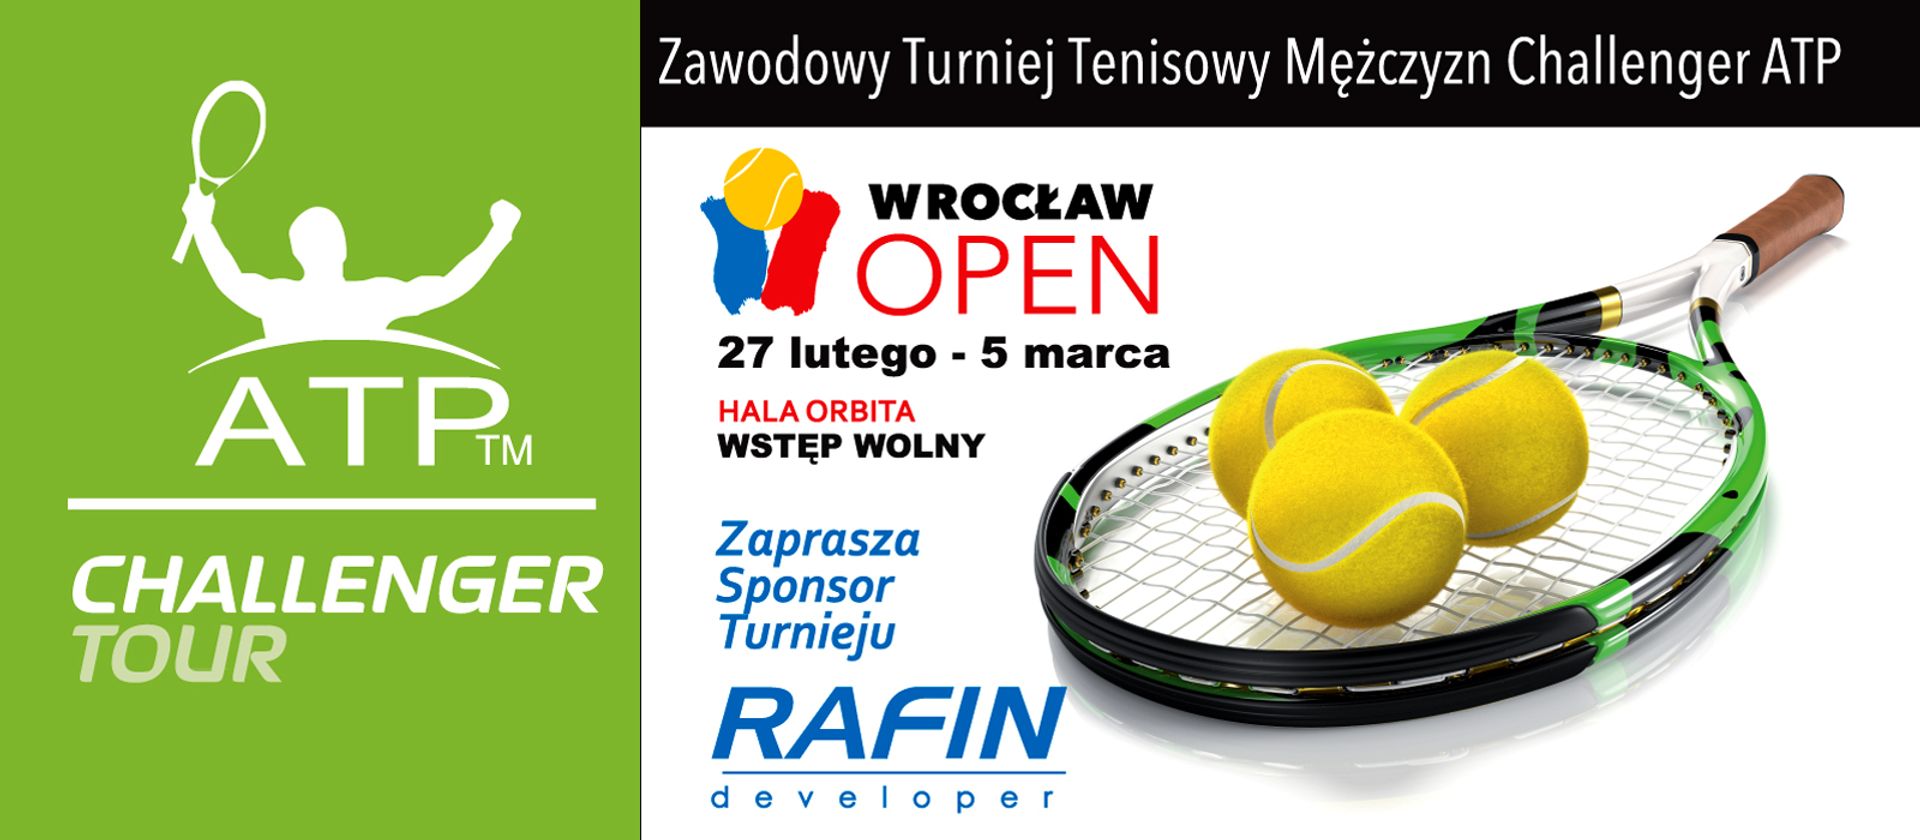  Wrocław Open 2017 już niedługo!